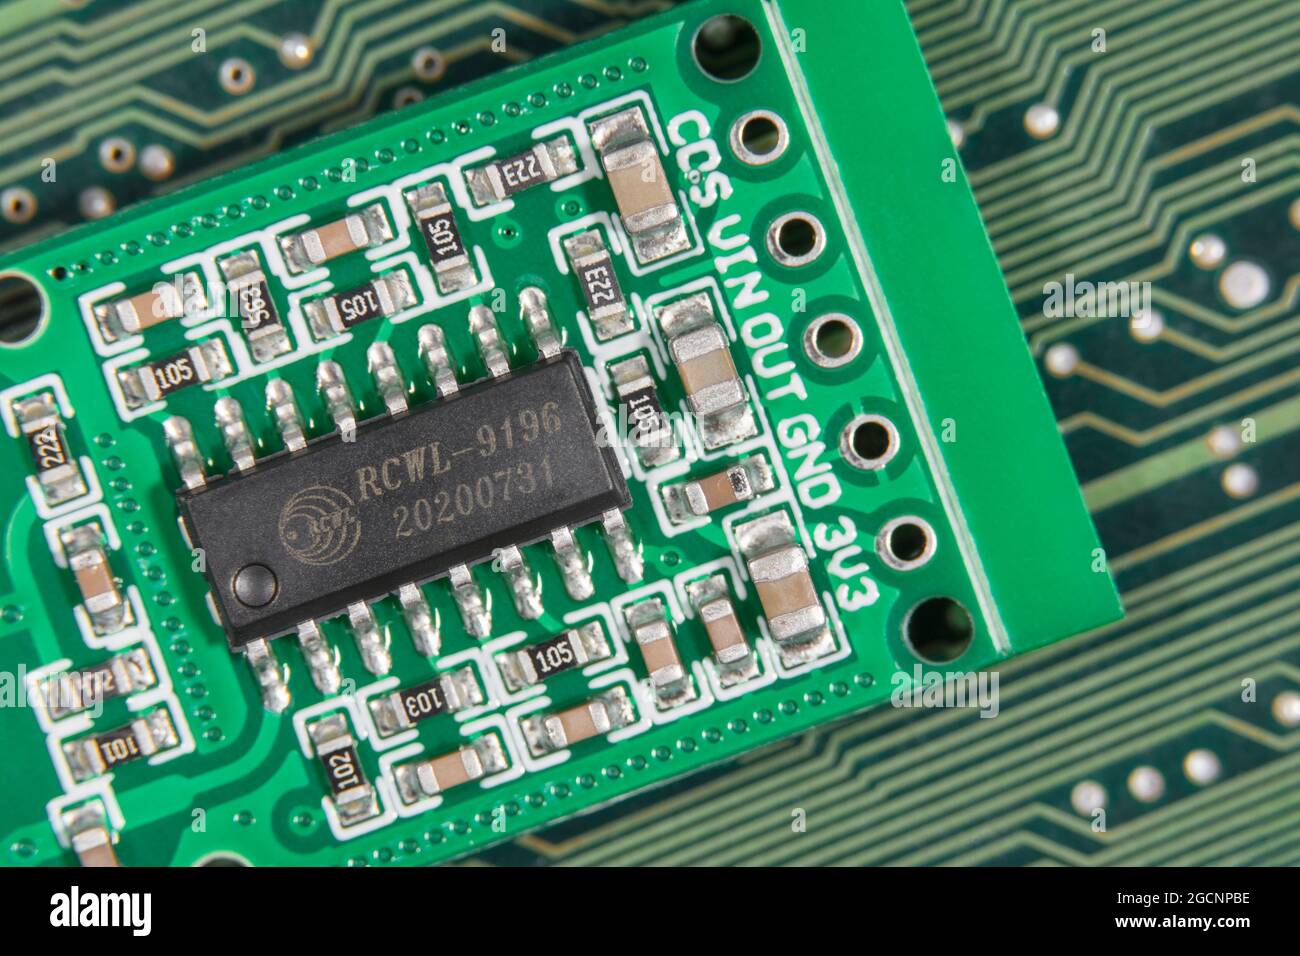 IC-Chip für Makroaufnahmen auf Leiterplatte für Kleinbewegungssensoren. Konzentrieren Sie sich auf RCWL-0516-Schriftzüge. Chip ist ein Steuerchip zur Verarbeitung von Übertragungssignalen. Stockfoto